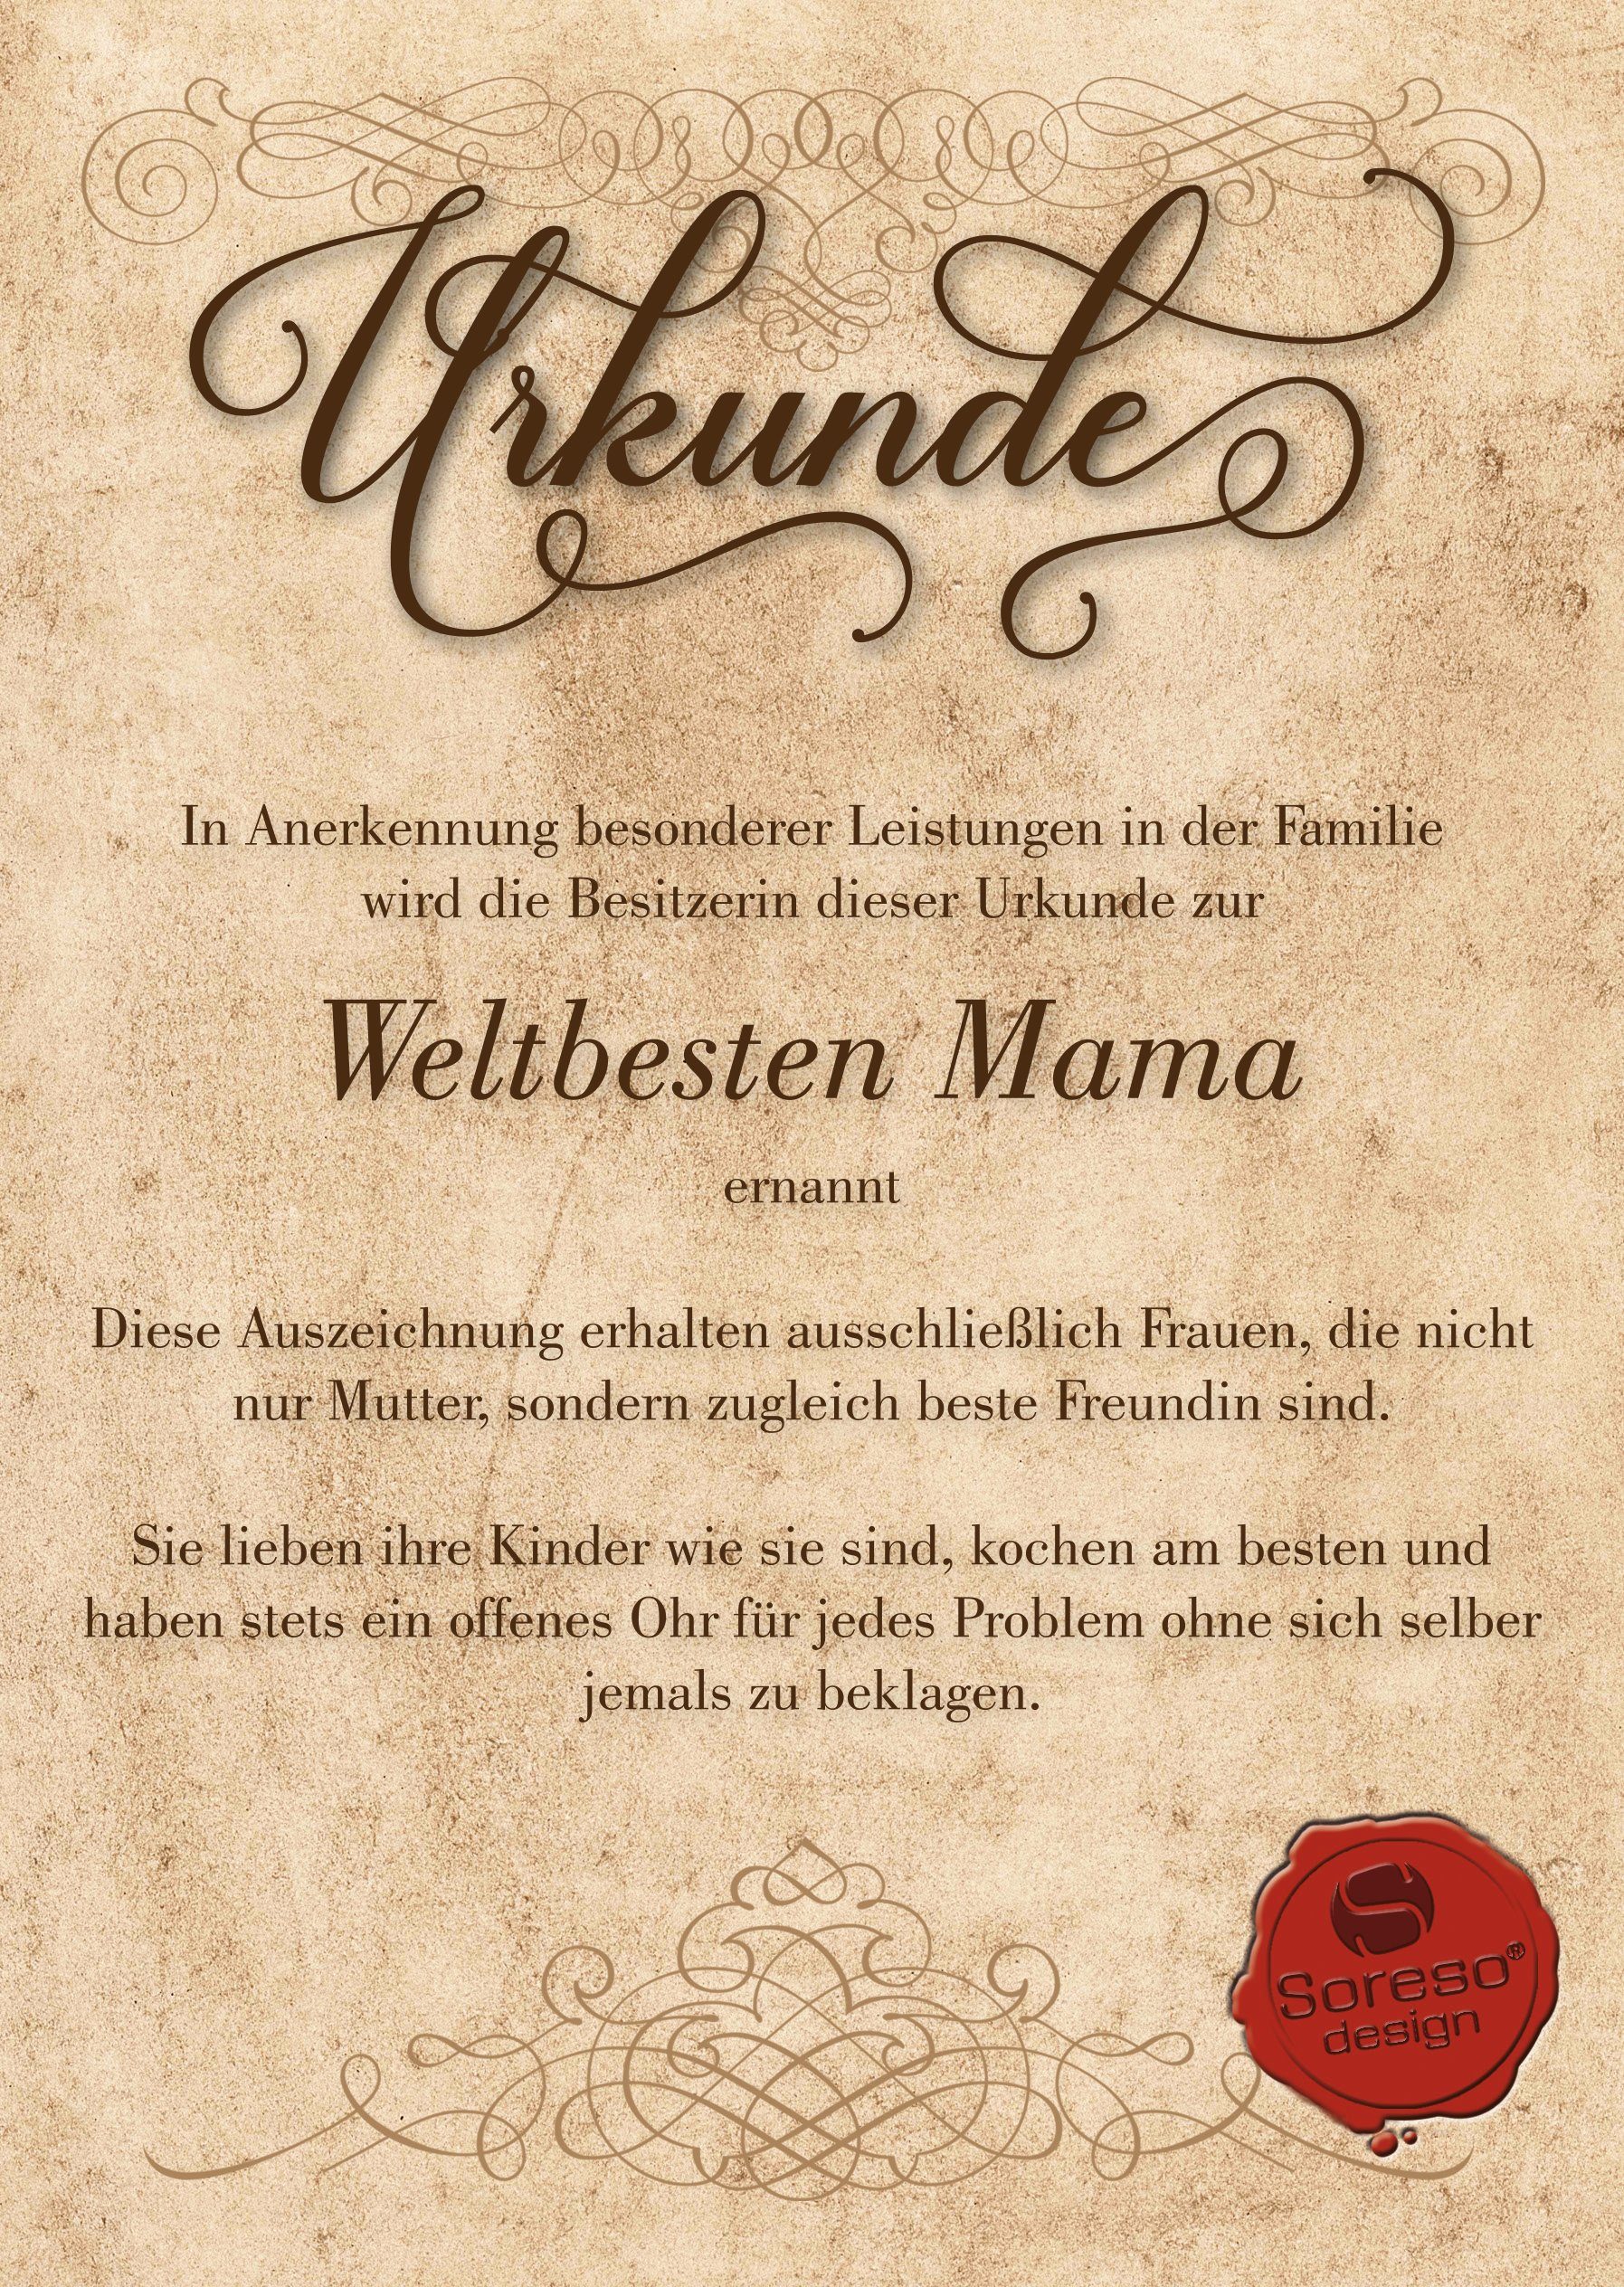 Geburtstagsgeschenk Soreso® Geschenk Beste Kissen & Mama Dekokissen Urkunde, rot